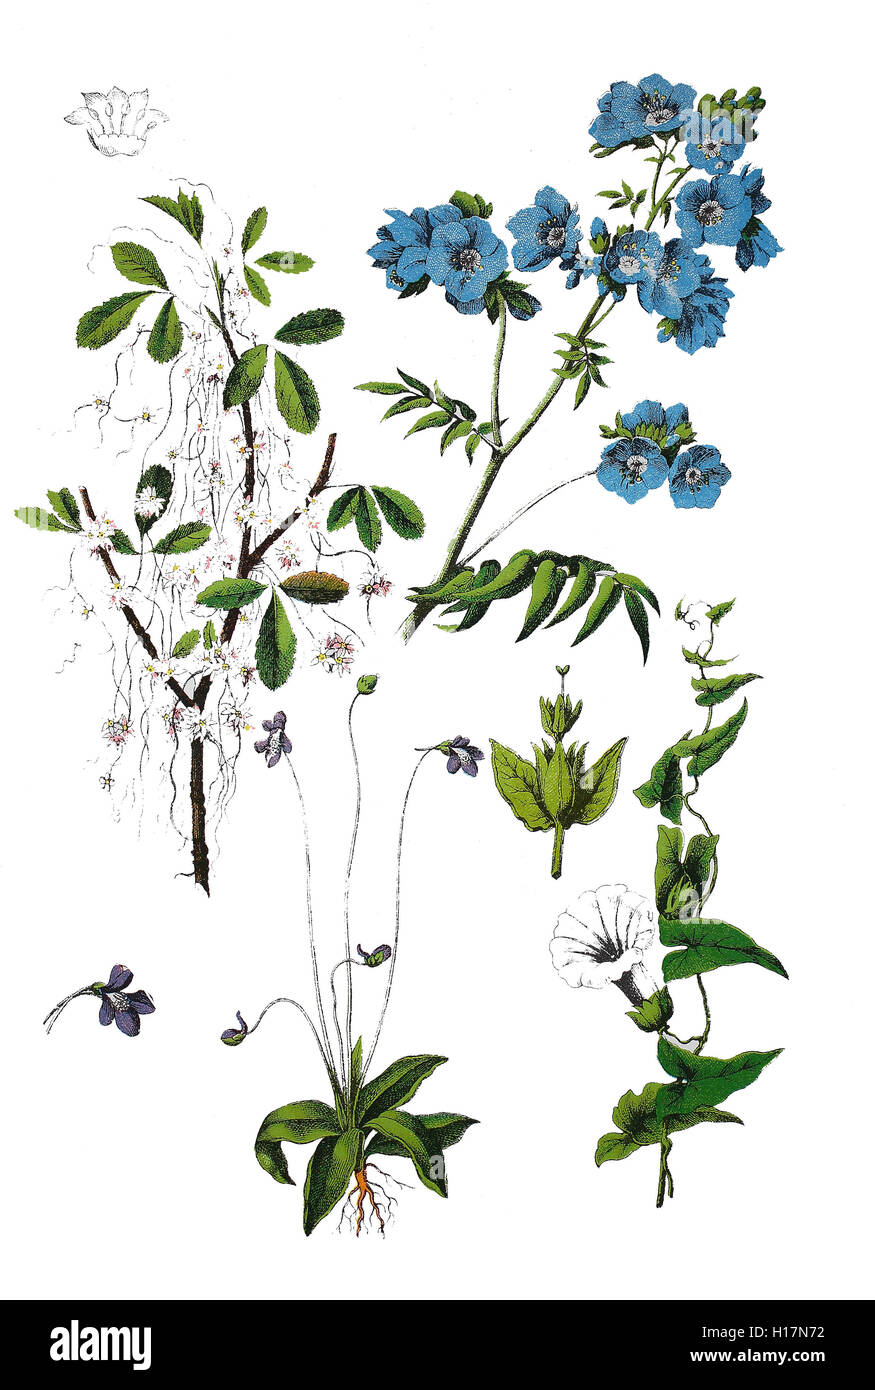 Quendel-Seide, Cuscuta epithymum (oben links), Jakobsleiter, Polemonium caeruleum (oben rechts), Gemeine Fettkraut, Gewöhnliches Fettkraut, Blaues Fettkraut, oder Kiwitzfettkraut, Pinguicula vulgaris (unten mitte), Echte Zaunwinde, Calystegia sepium (links unten) Stock Photo